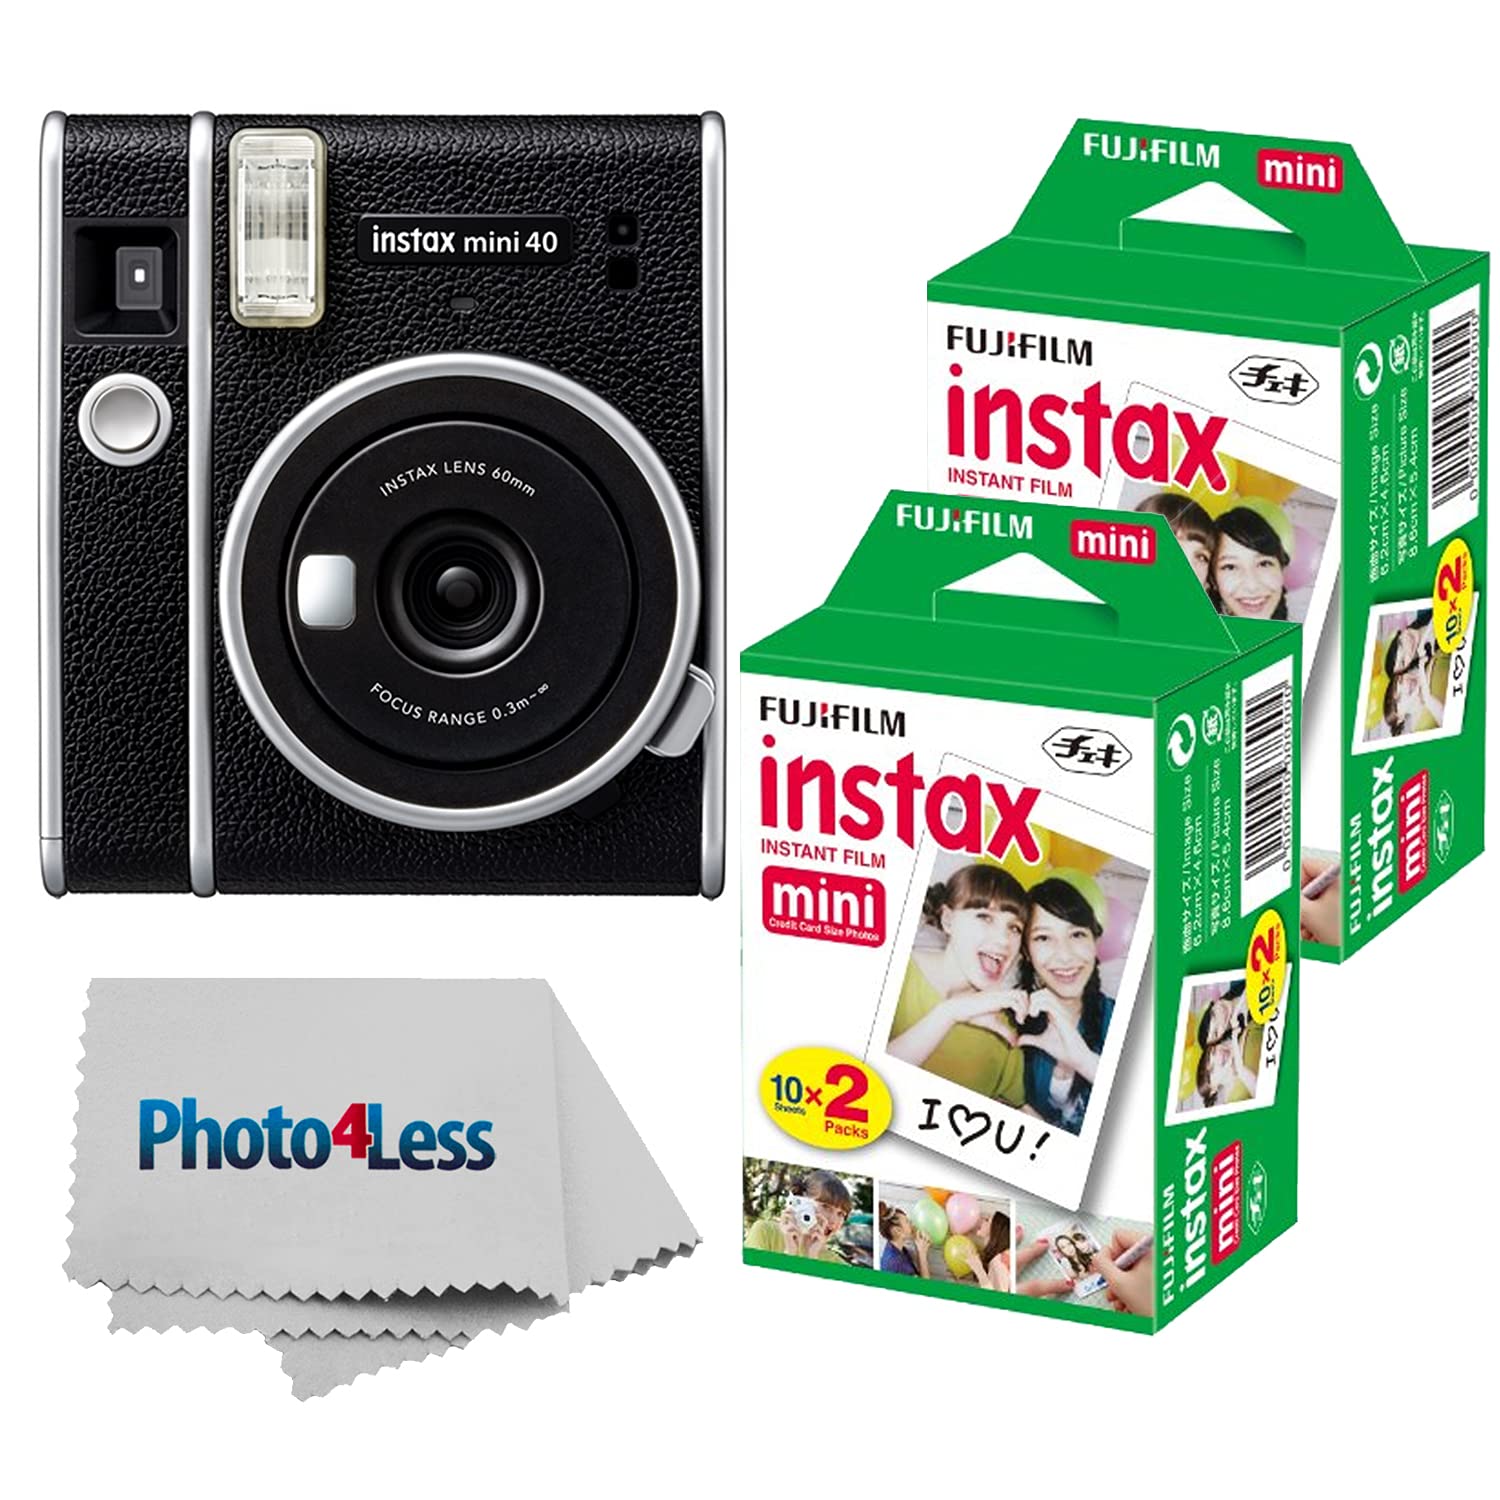 Fujifilm Instax Mini 40 Sofortbildkamera Schwarz + Instax Mini Twin Pack Sofortbildfilm 2 Packungen (insgesamt 40 Blatt) – Sofortbildkamera-Paket mit tollem Preis-Leistungs-Verhältnis!